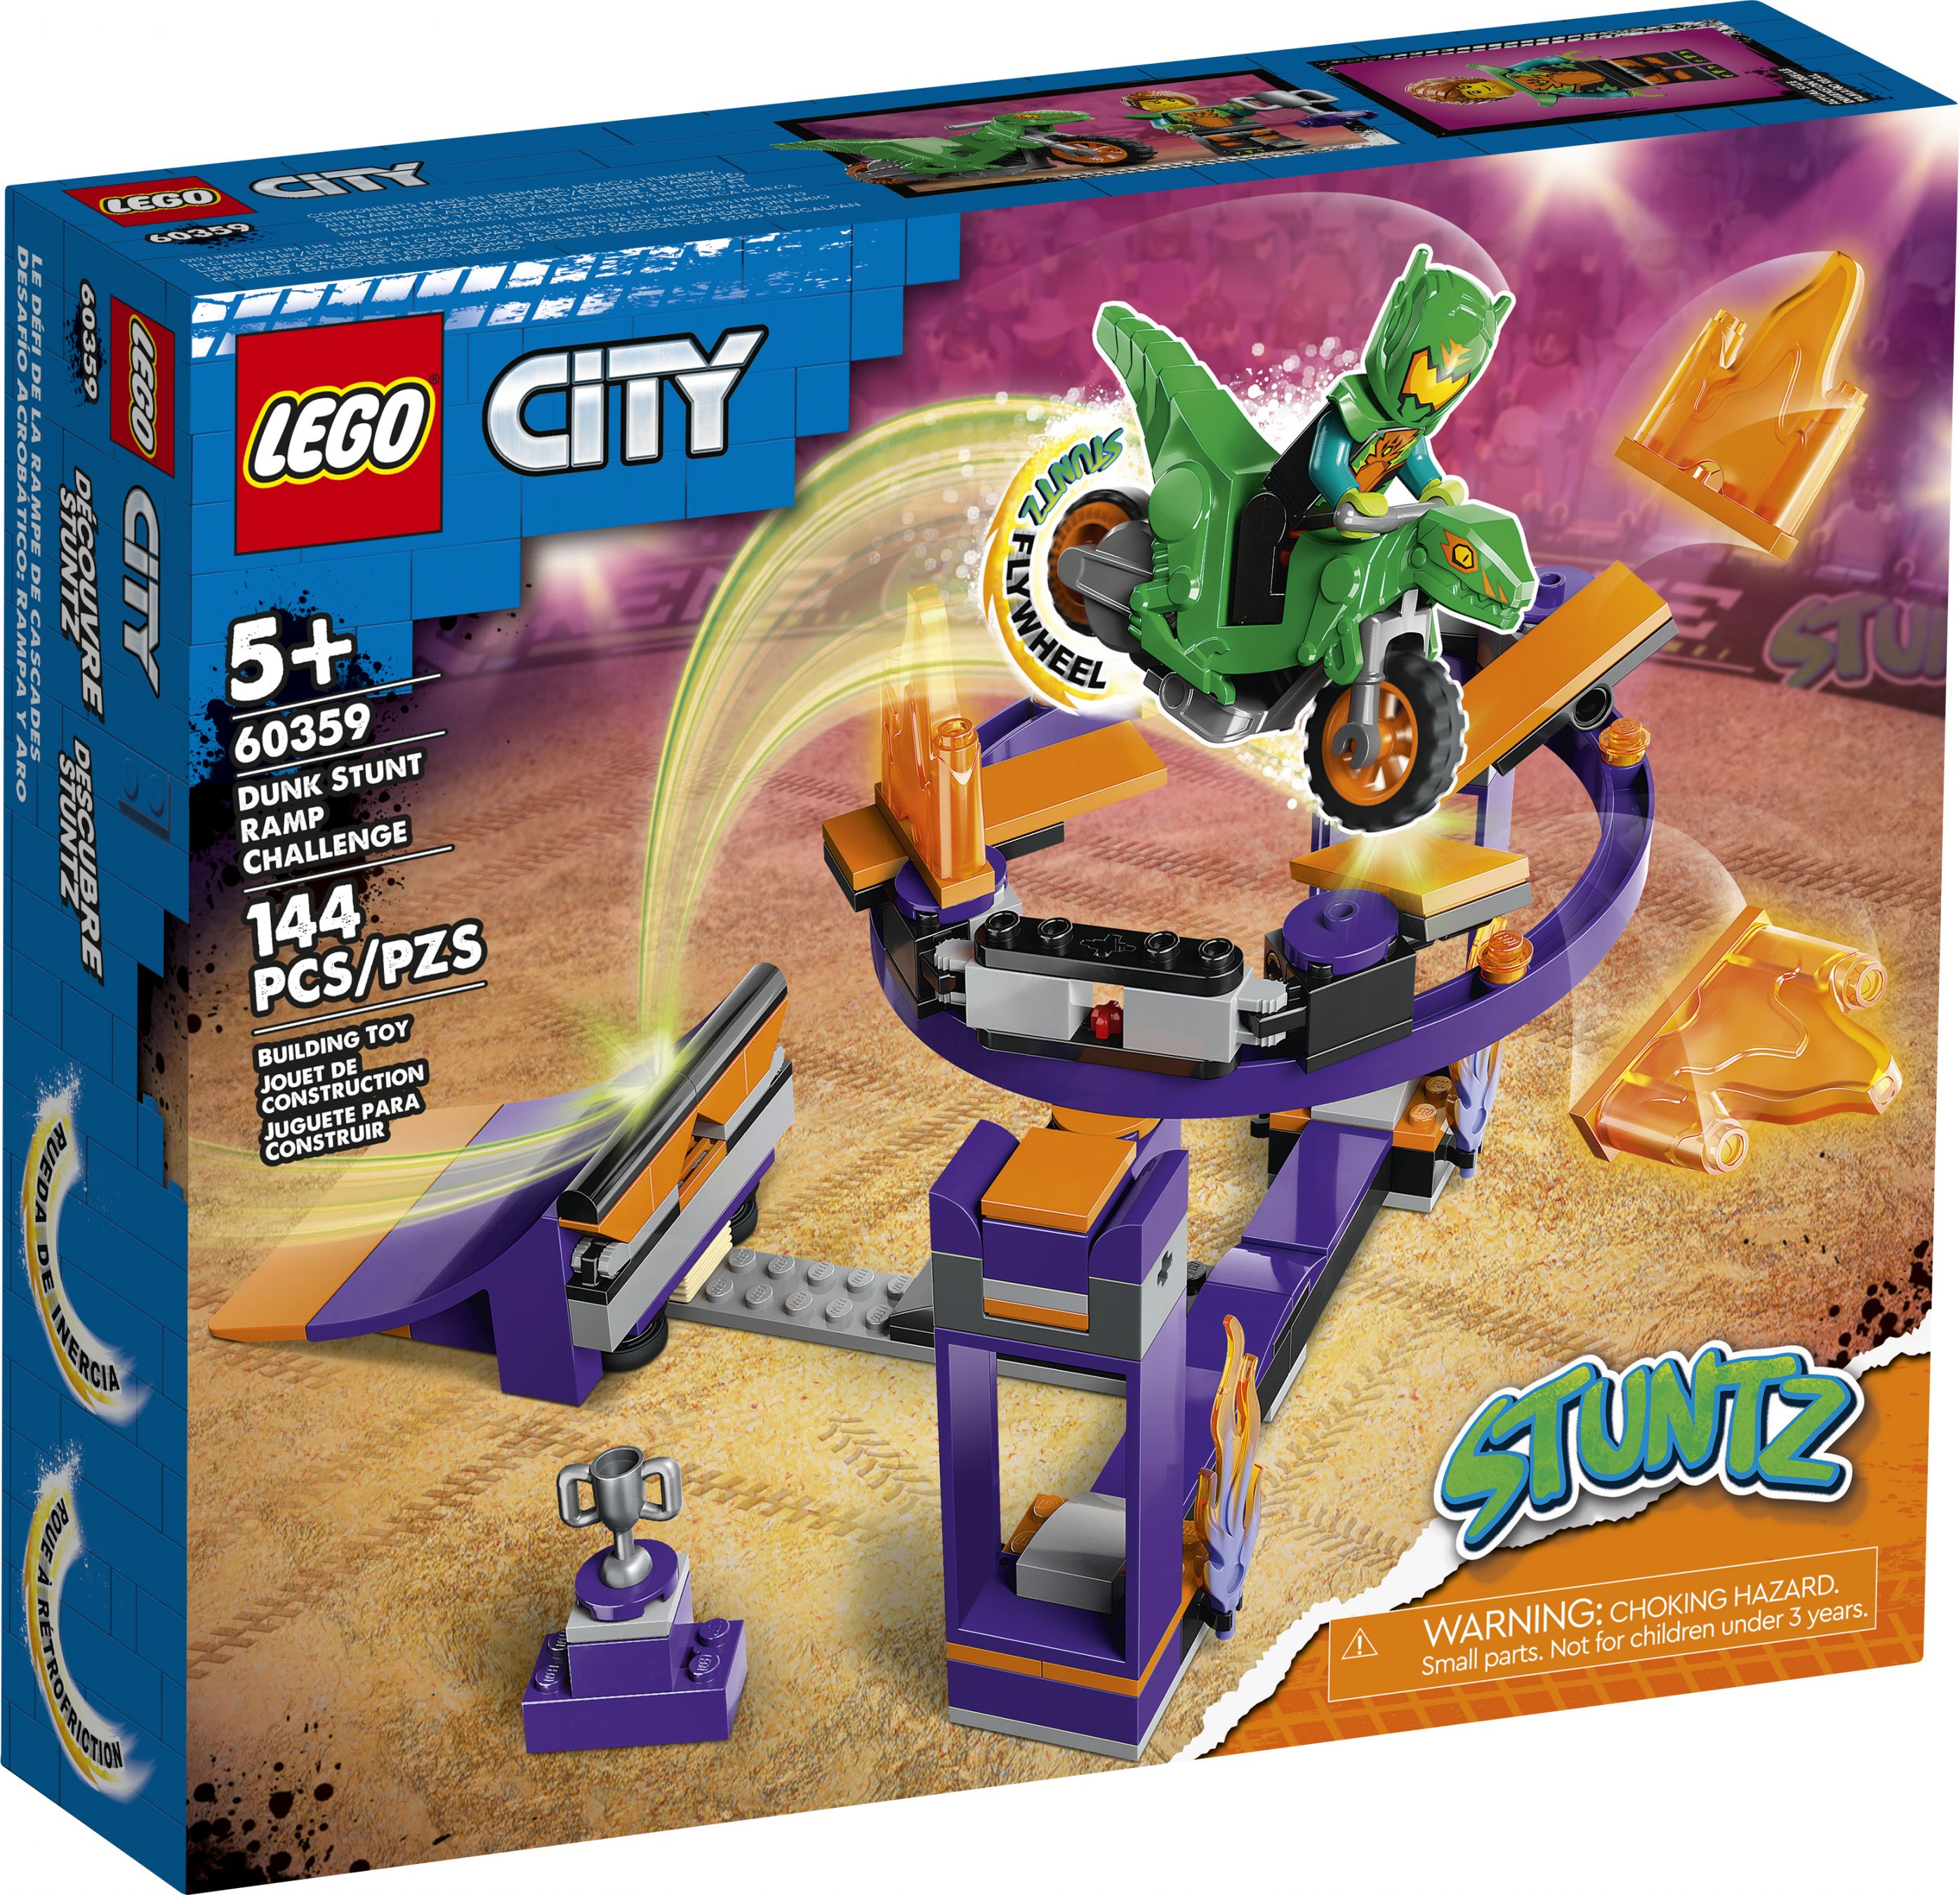 LEGO City 60359 Stuntrampe mit Dunk-Challenge LEGO_60359_Box1_v39.jpg